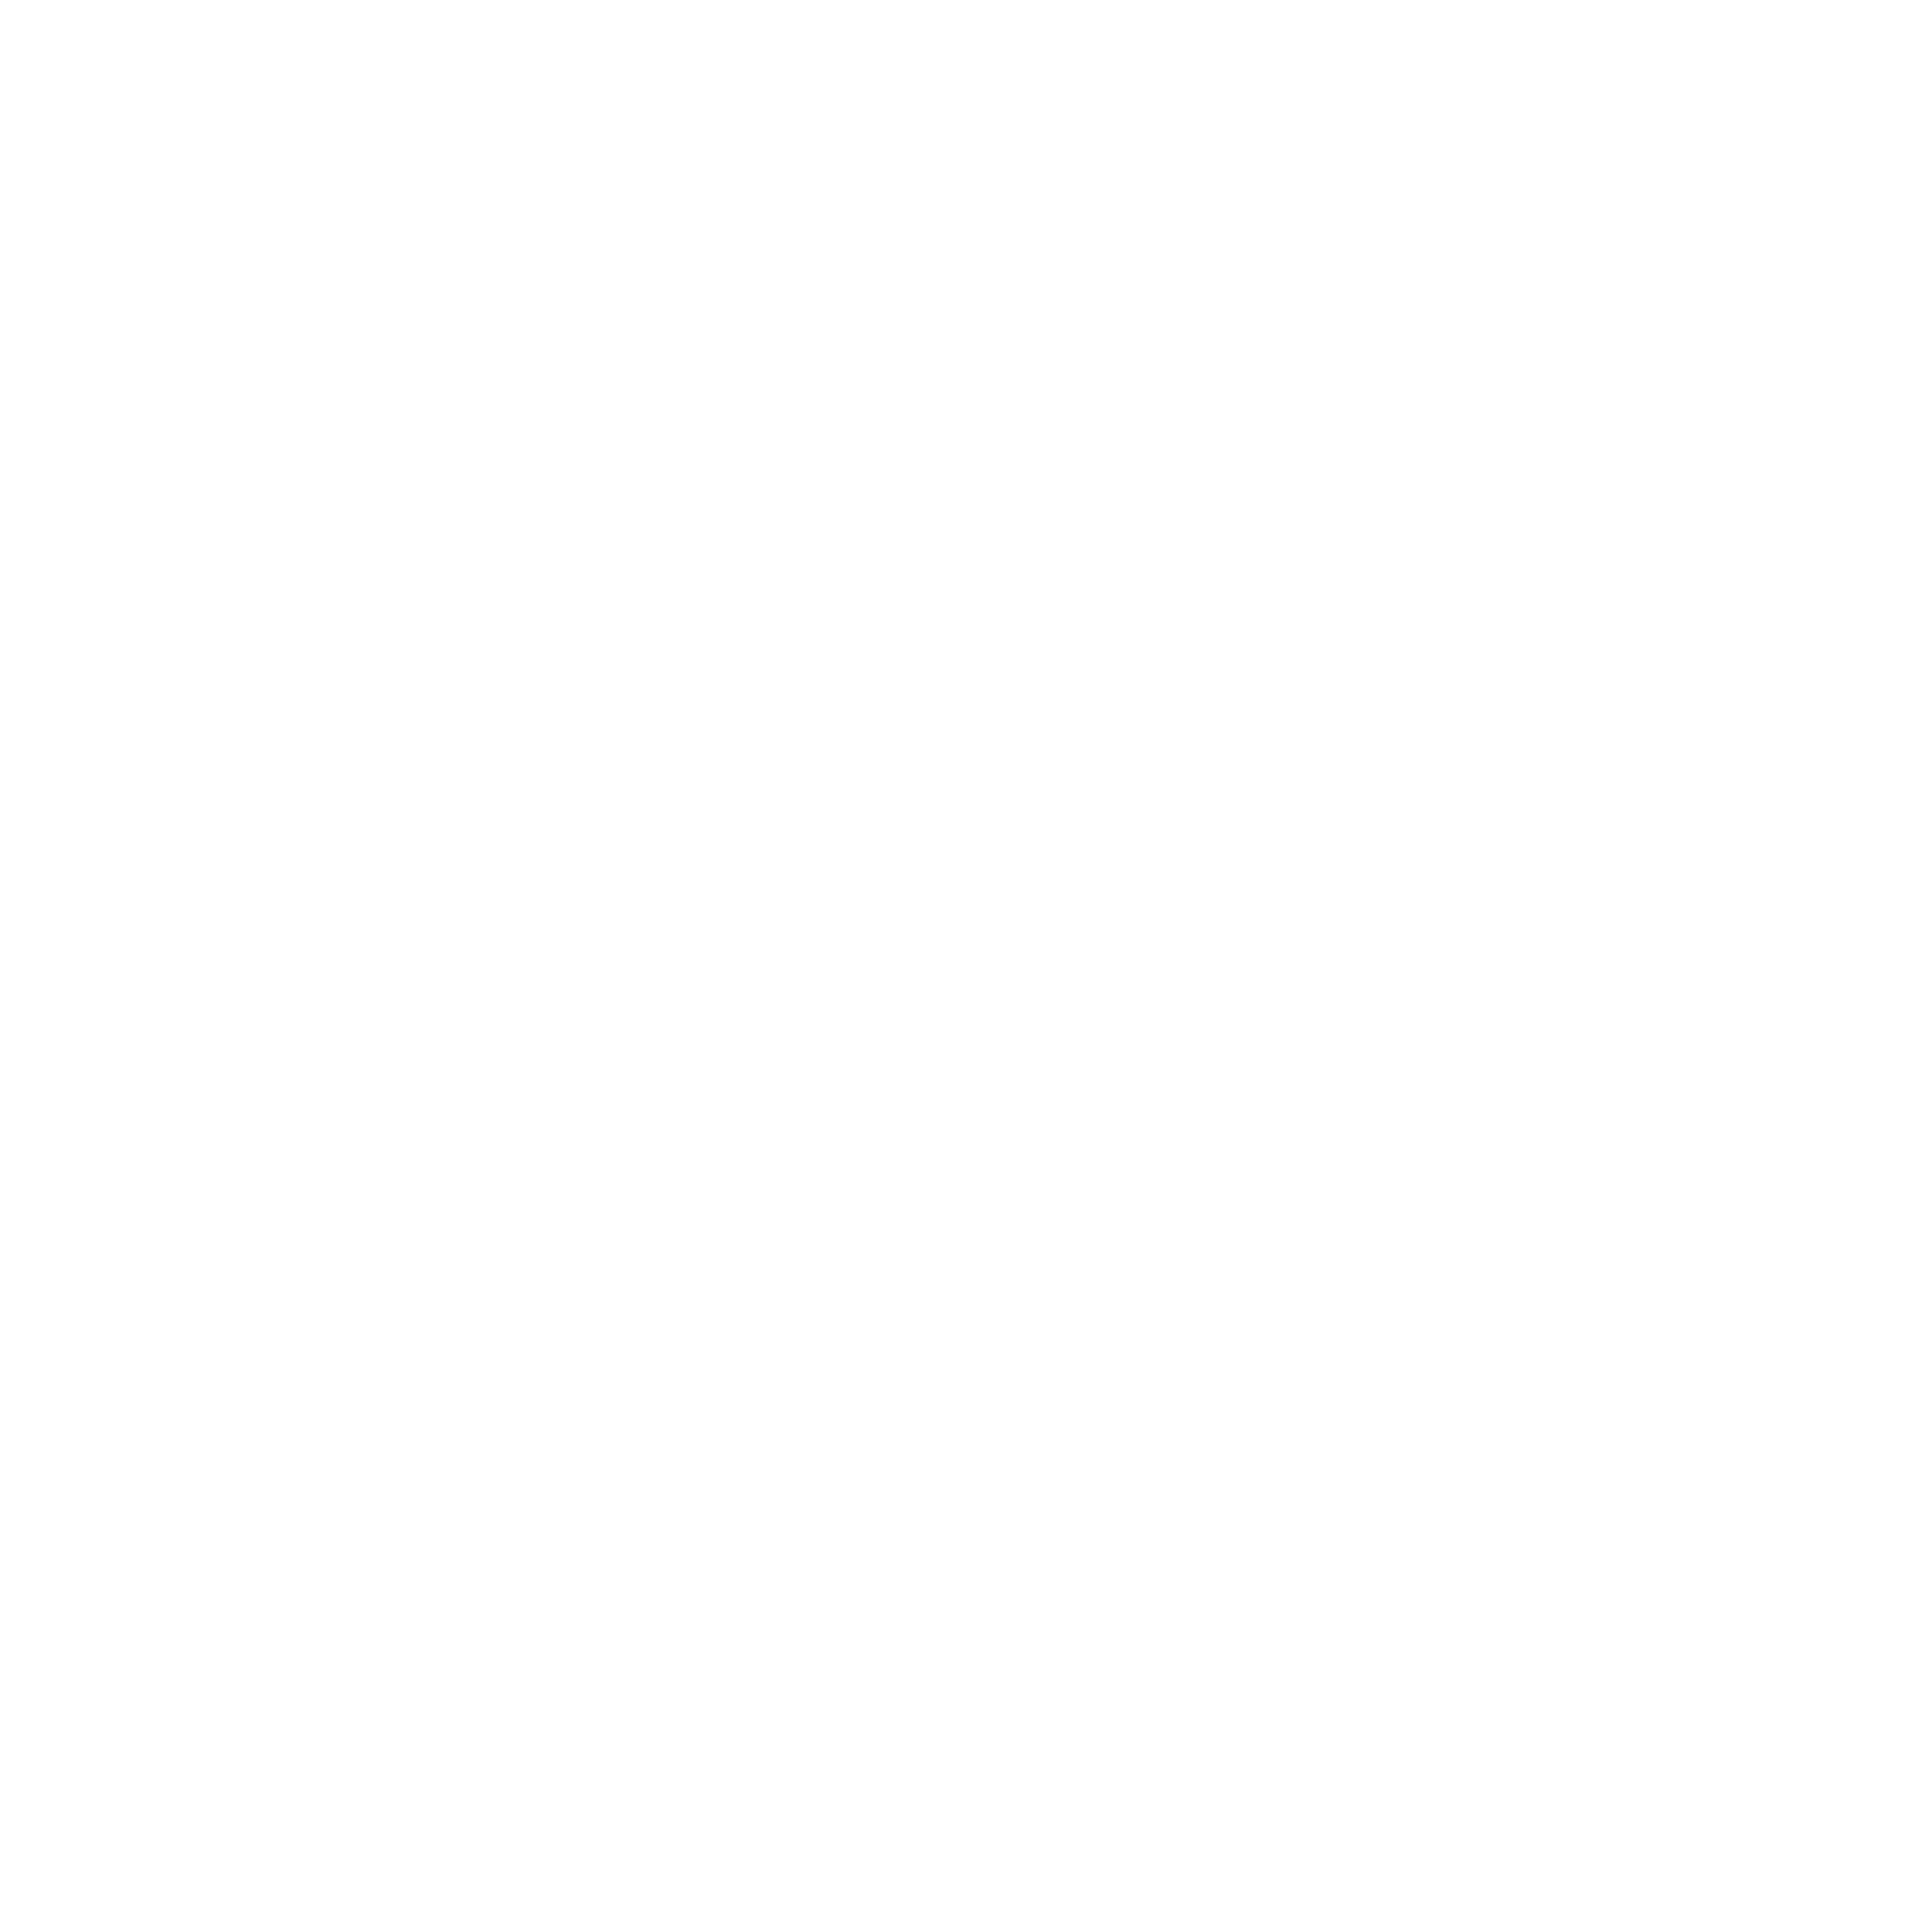 OPEL_LOGO-2